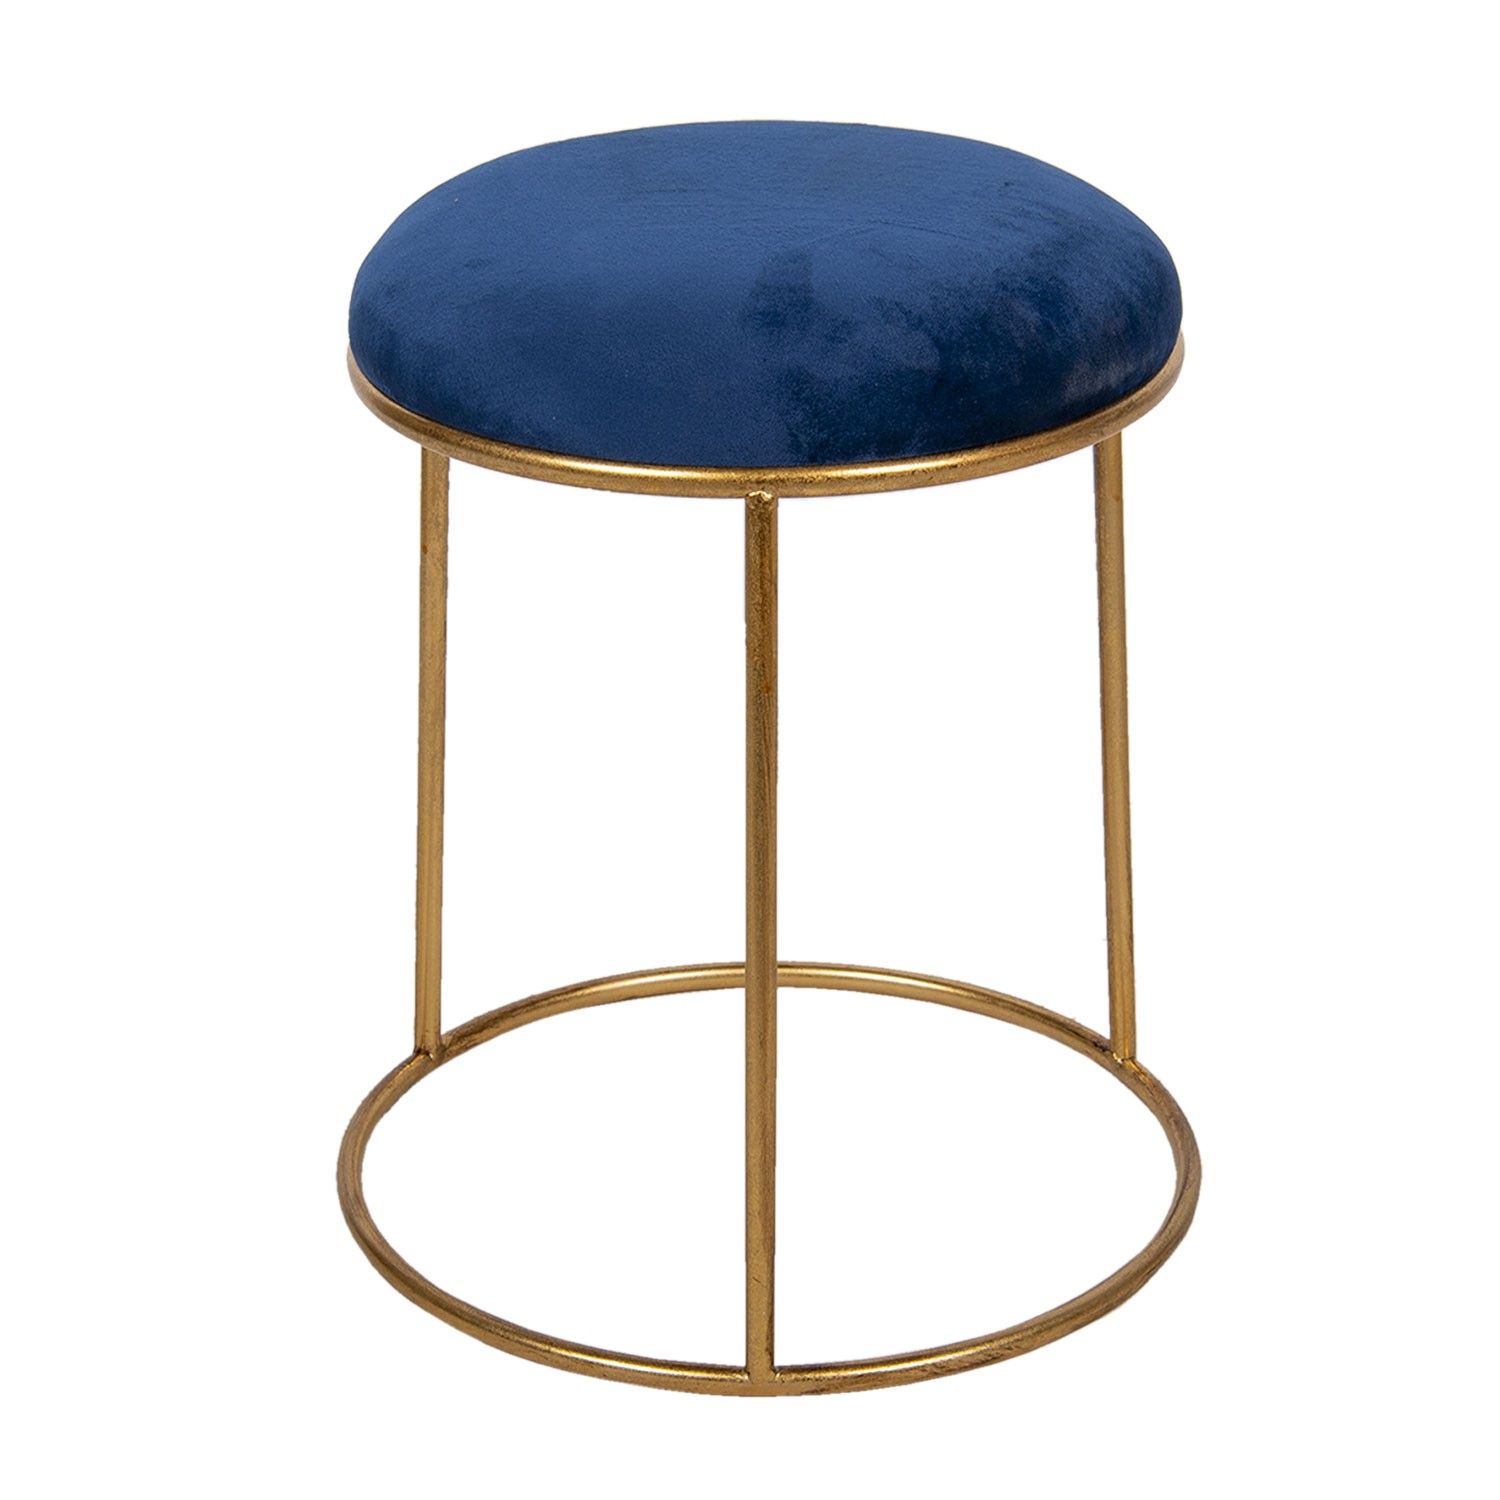 Zlatá kovová stolička s modrým sametovým sedákem - Ø 42*48 cm Clayre & Eef - LaHome - vintage dekorace